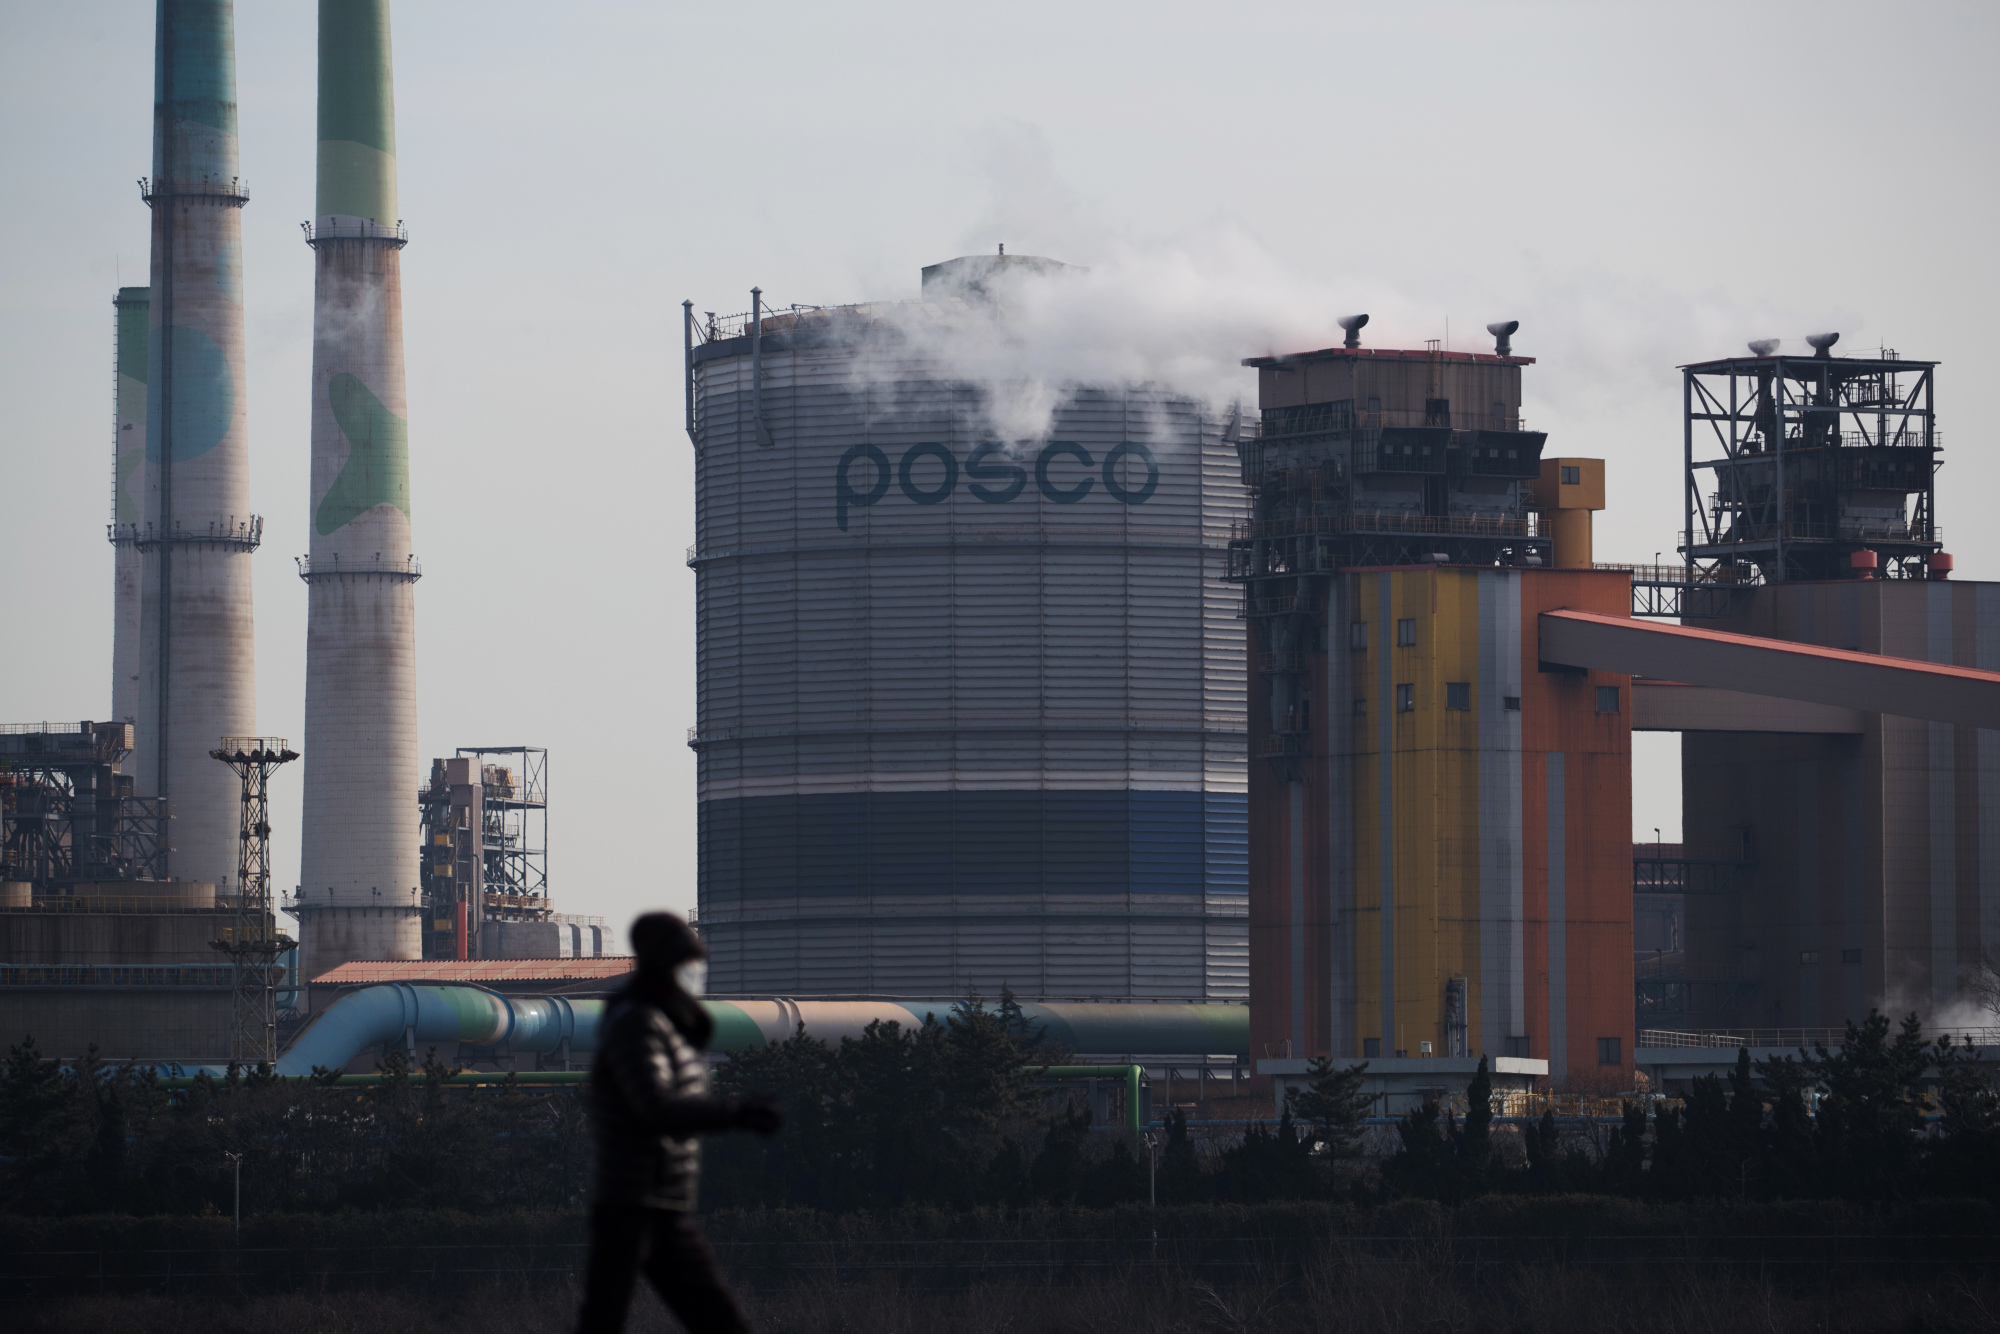 POSCO International pushing to merge with energy affiliate